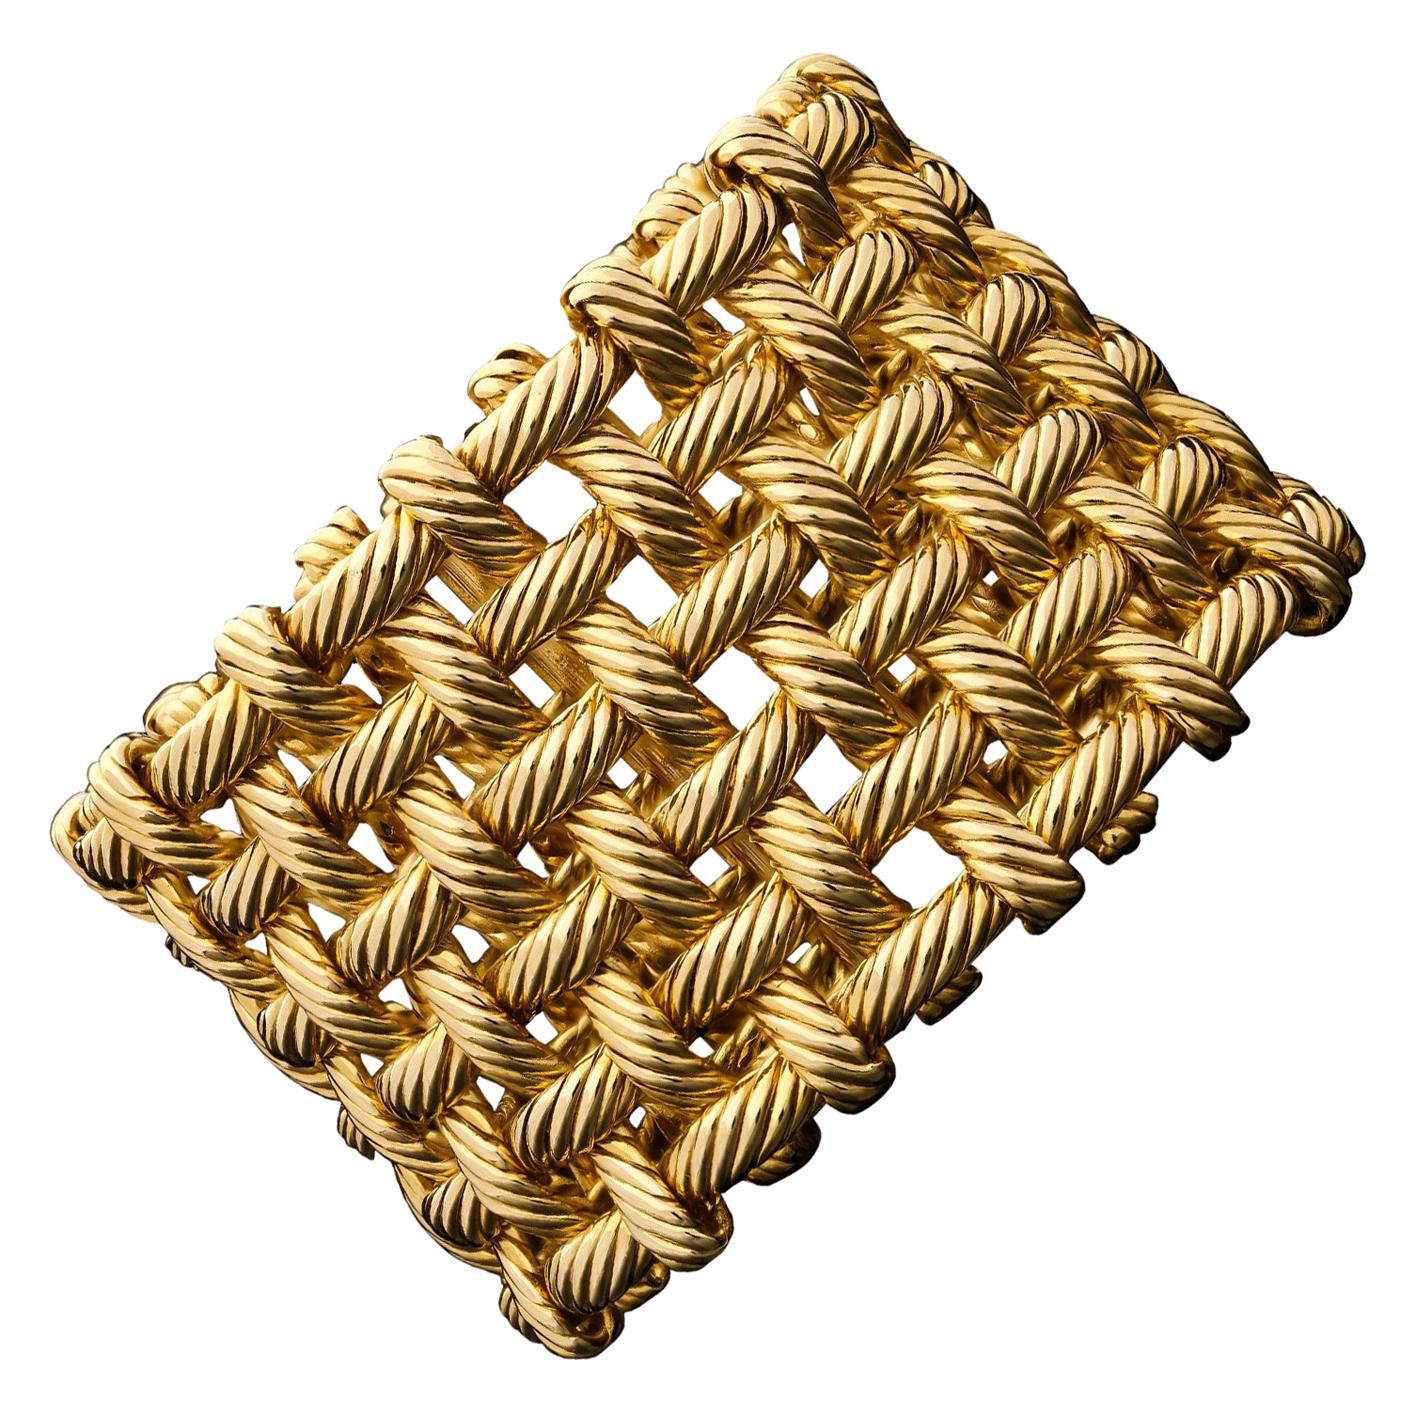 Hermes, 18ct Gold Flexible Open Basket Weave Cuff Bracelet